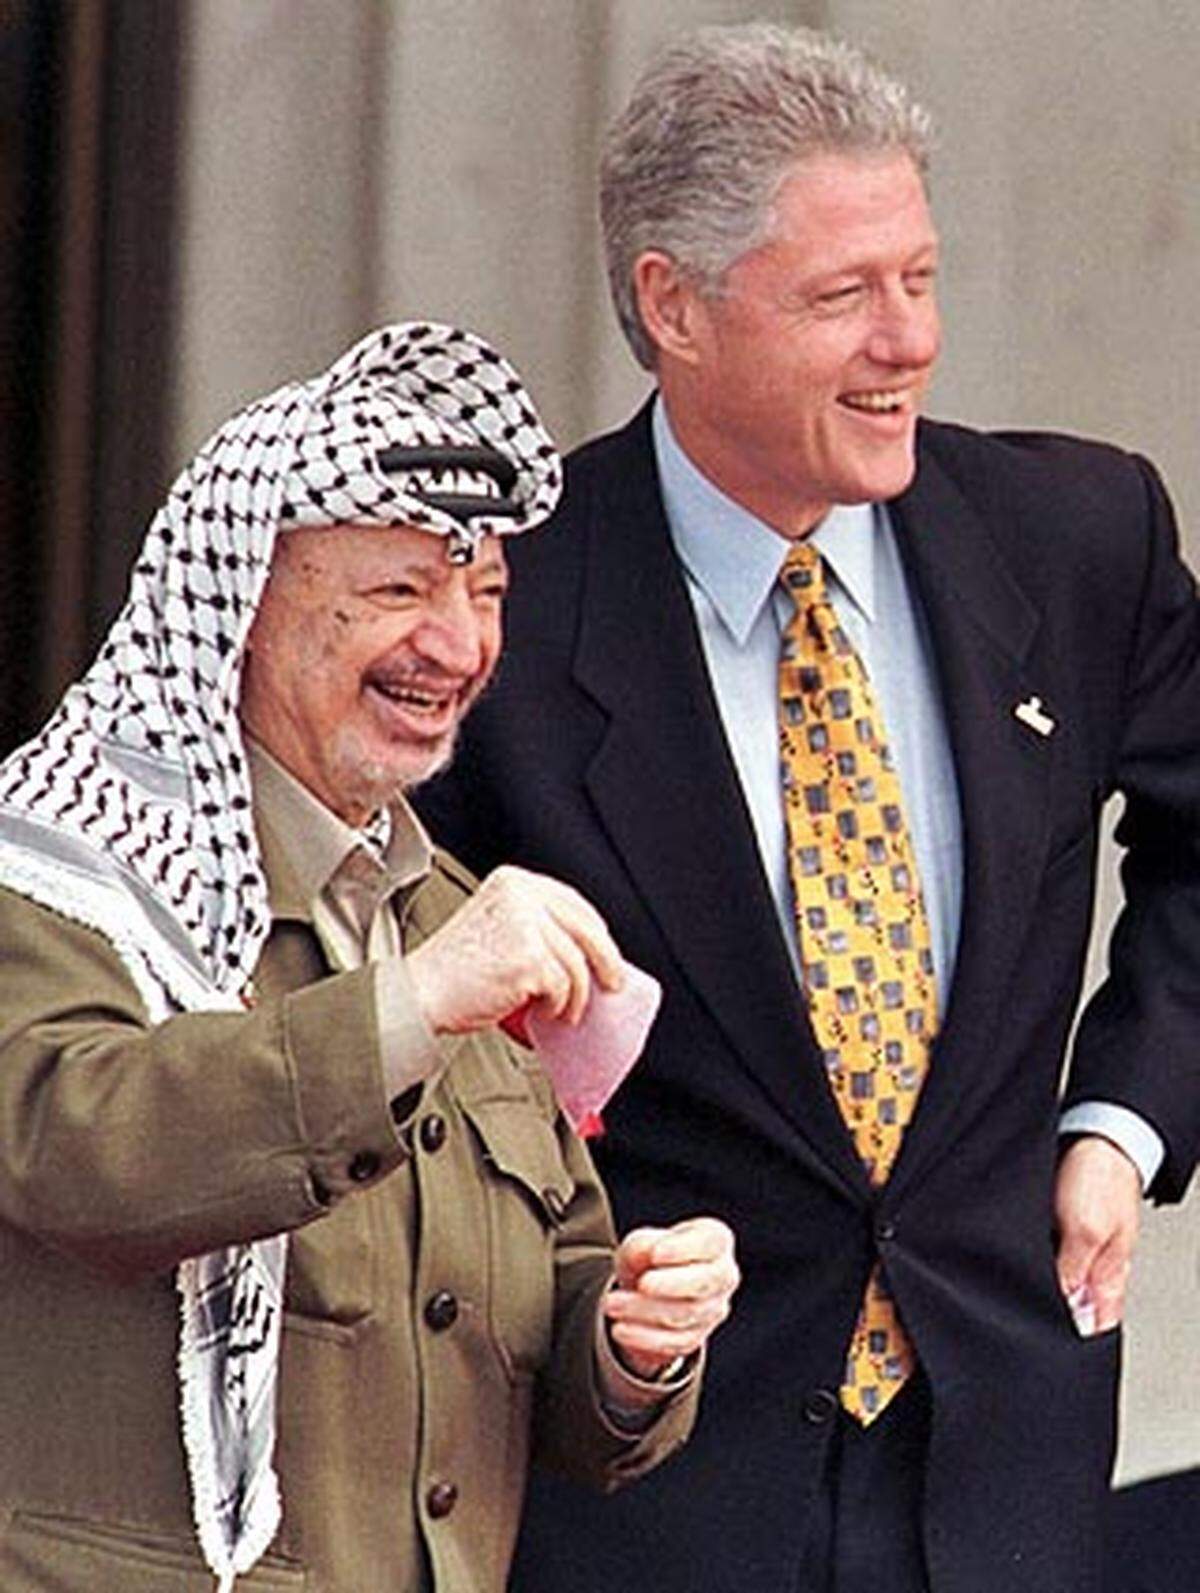 Oktober: Unter US-Vermittlung achttägige Verhandlungen Netanyahu-Arafat in Wye Plantation.  - 14. Dezember: Die palästinensischen Führungsgremien bekräftigen in Anwesenheit Clintons die Streichung der bereits früher annullierten Israel-feindlichen Passagen aus der PLO-Charta.